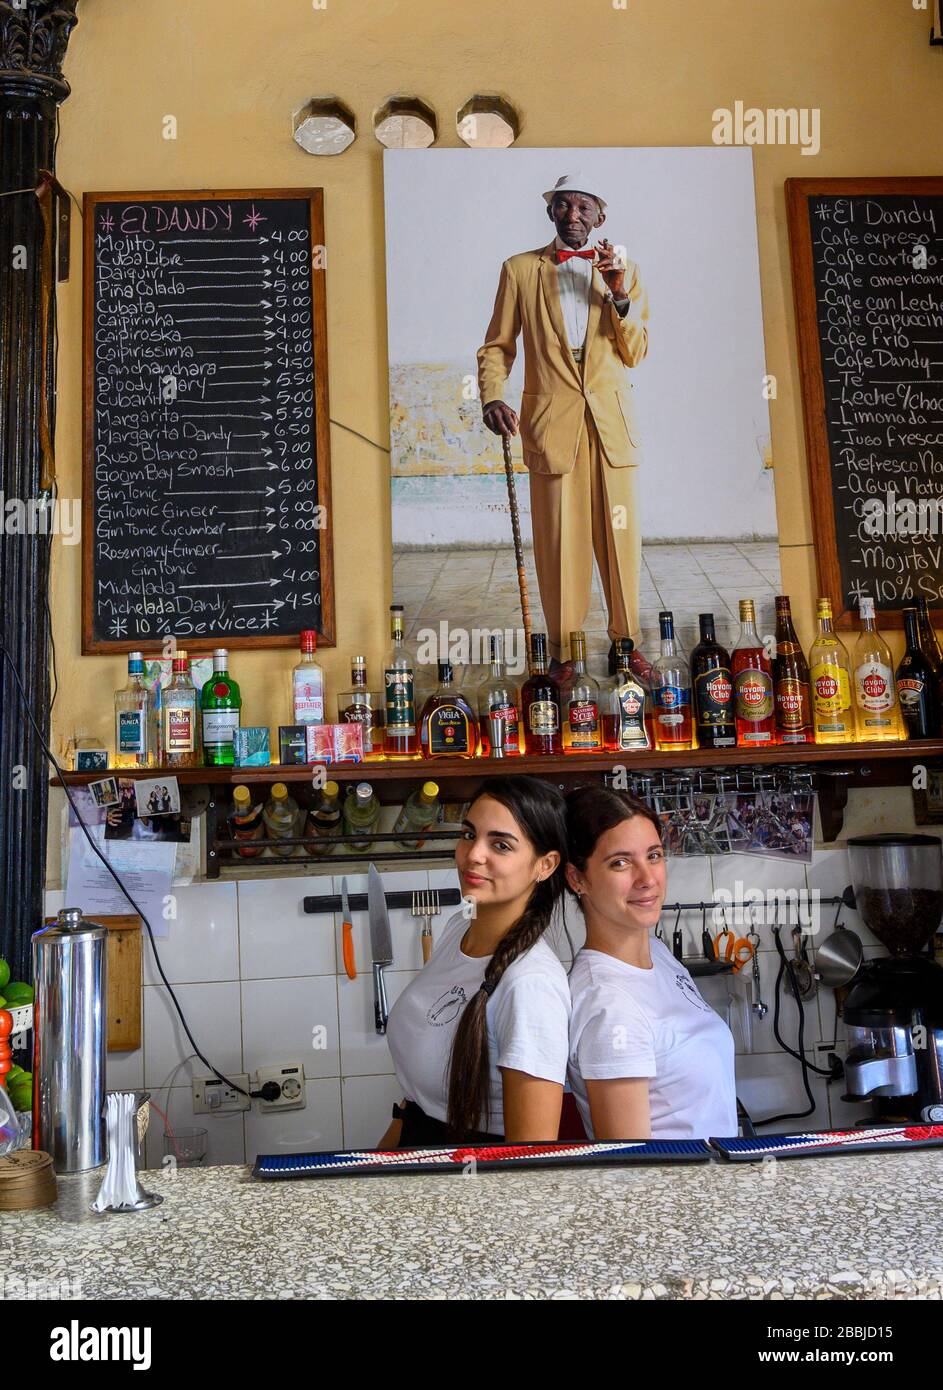 Barristas at Cafe El Dande, Havana, Cuba Stock Photo